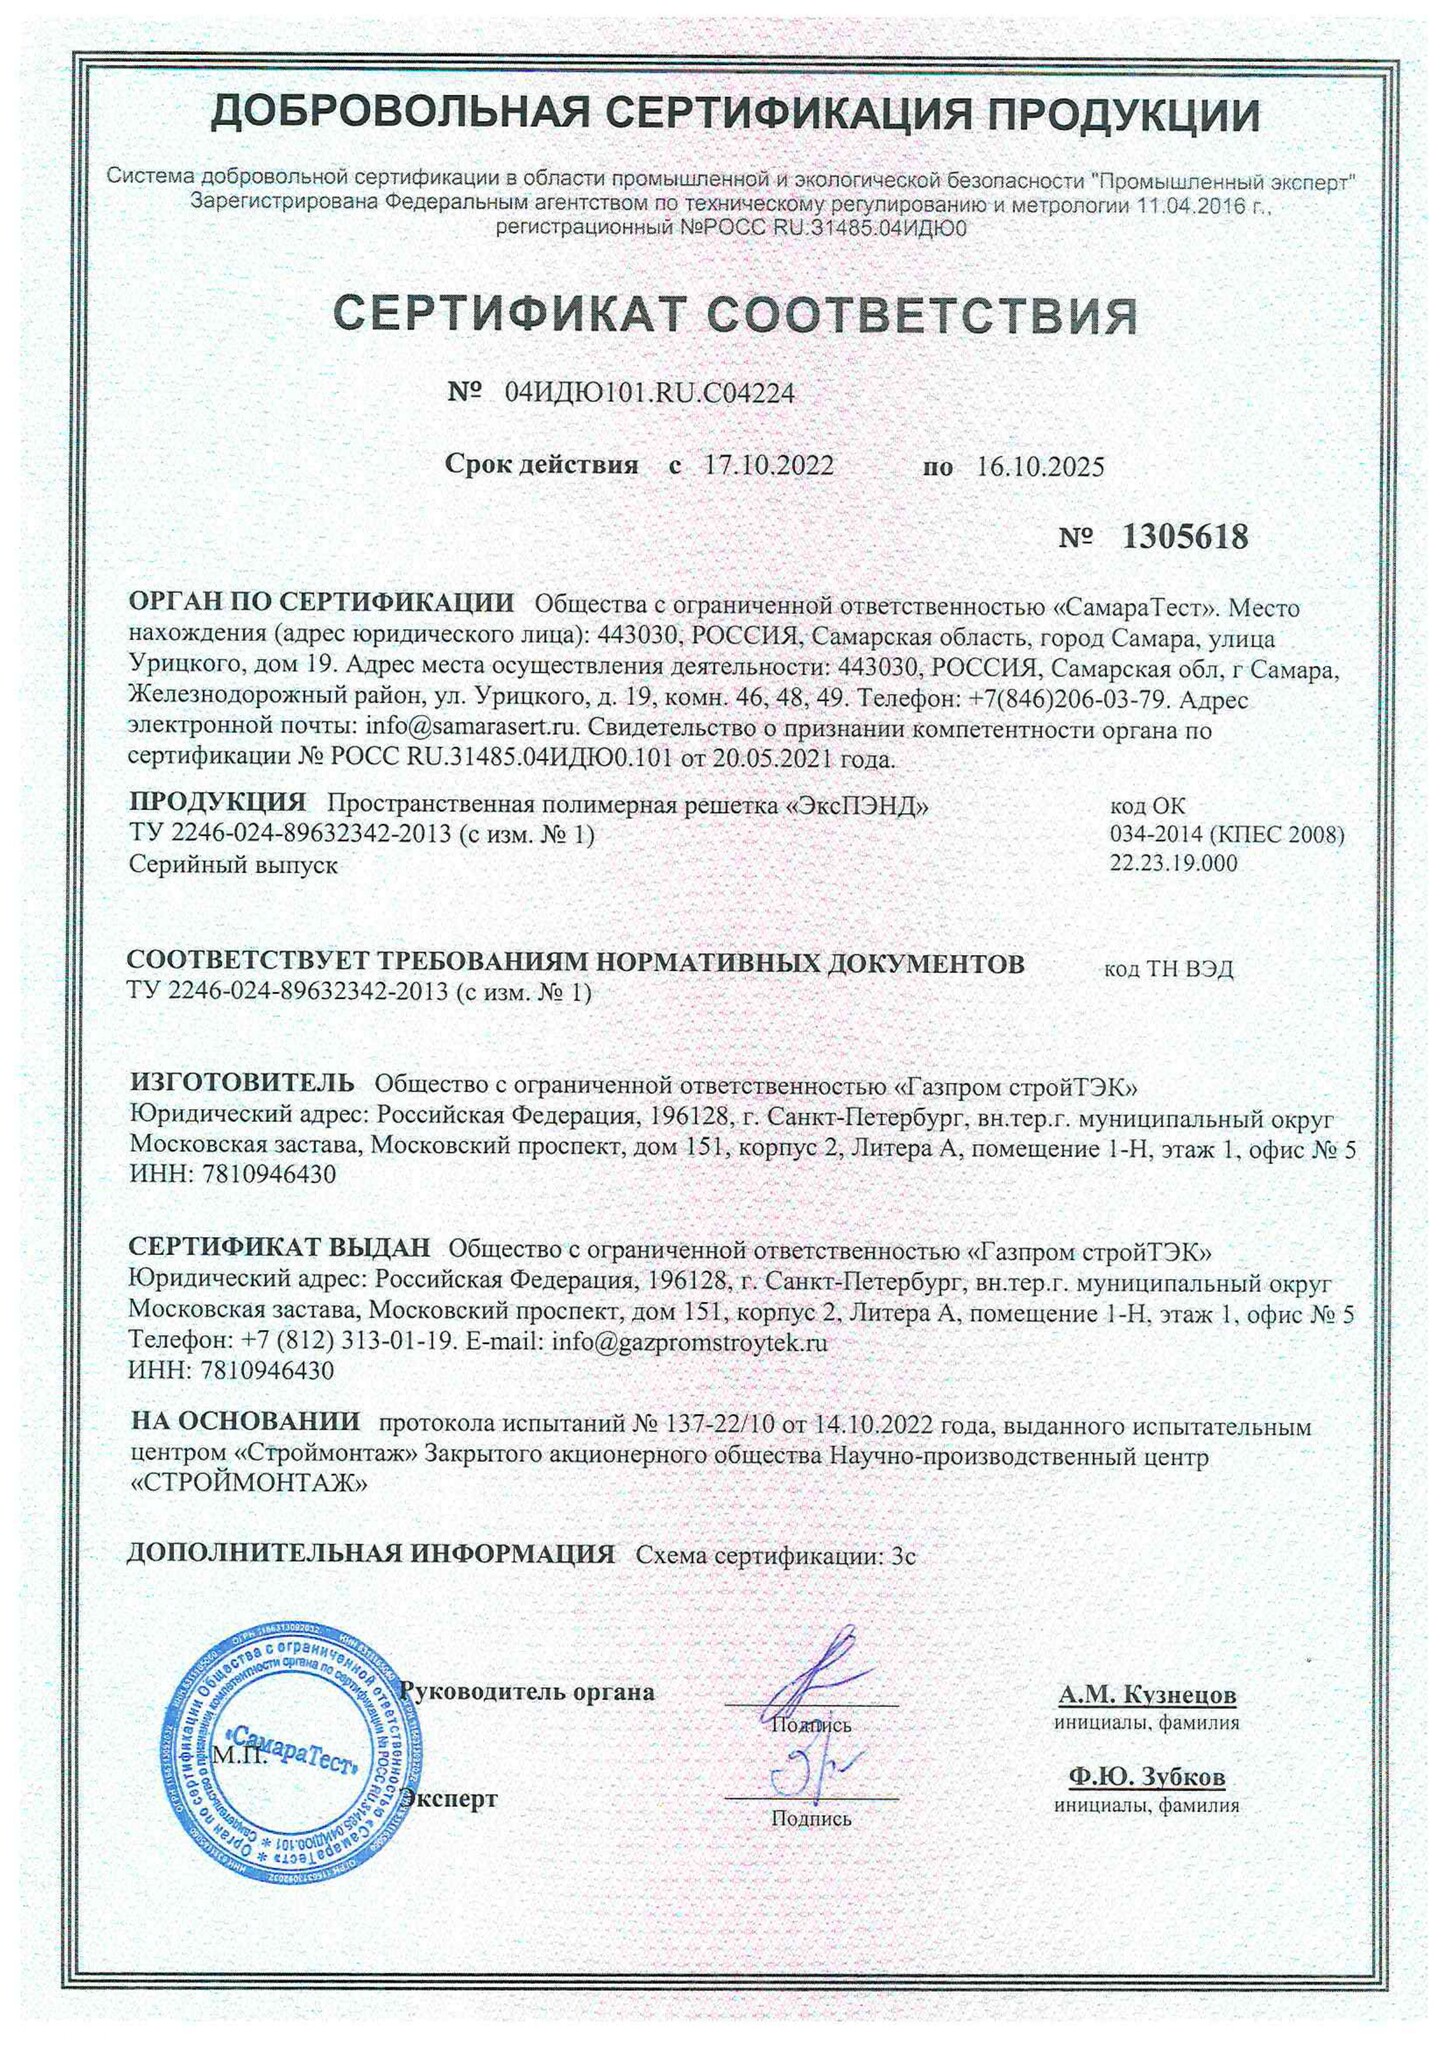 Сертификат ЭксПЭНД с изм. № 1 до 16.10.2025